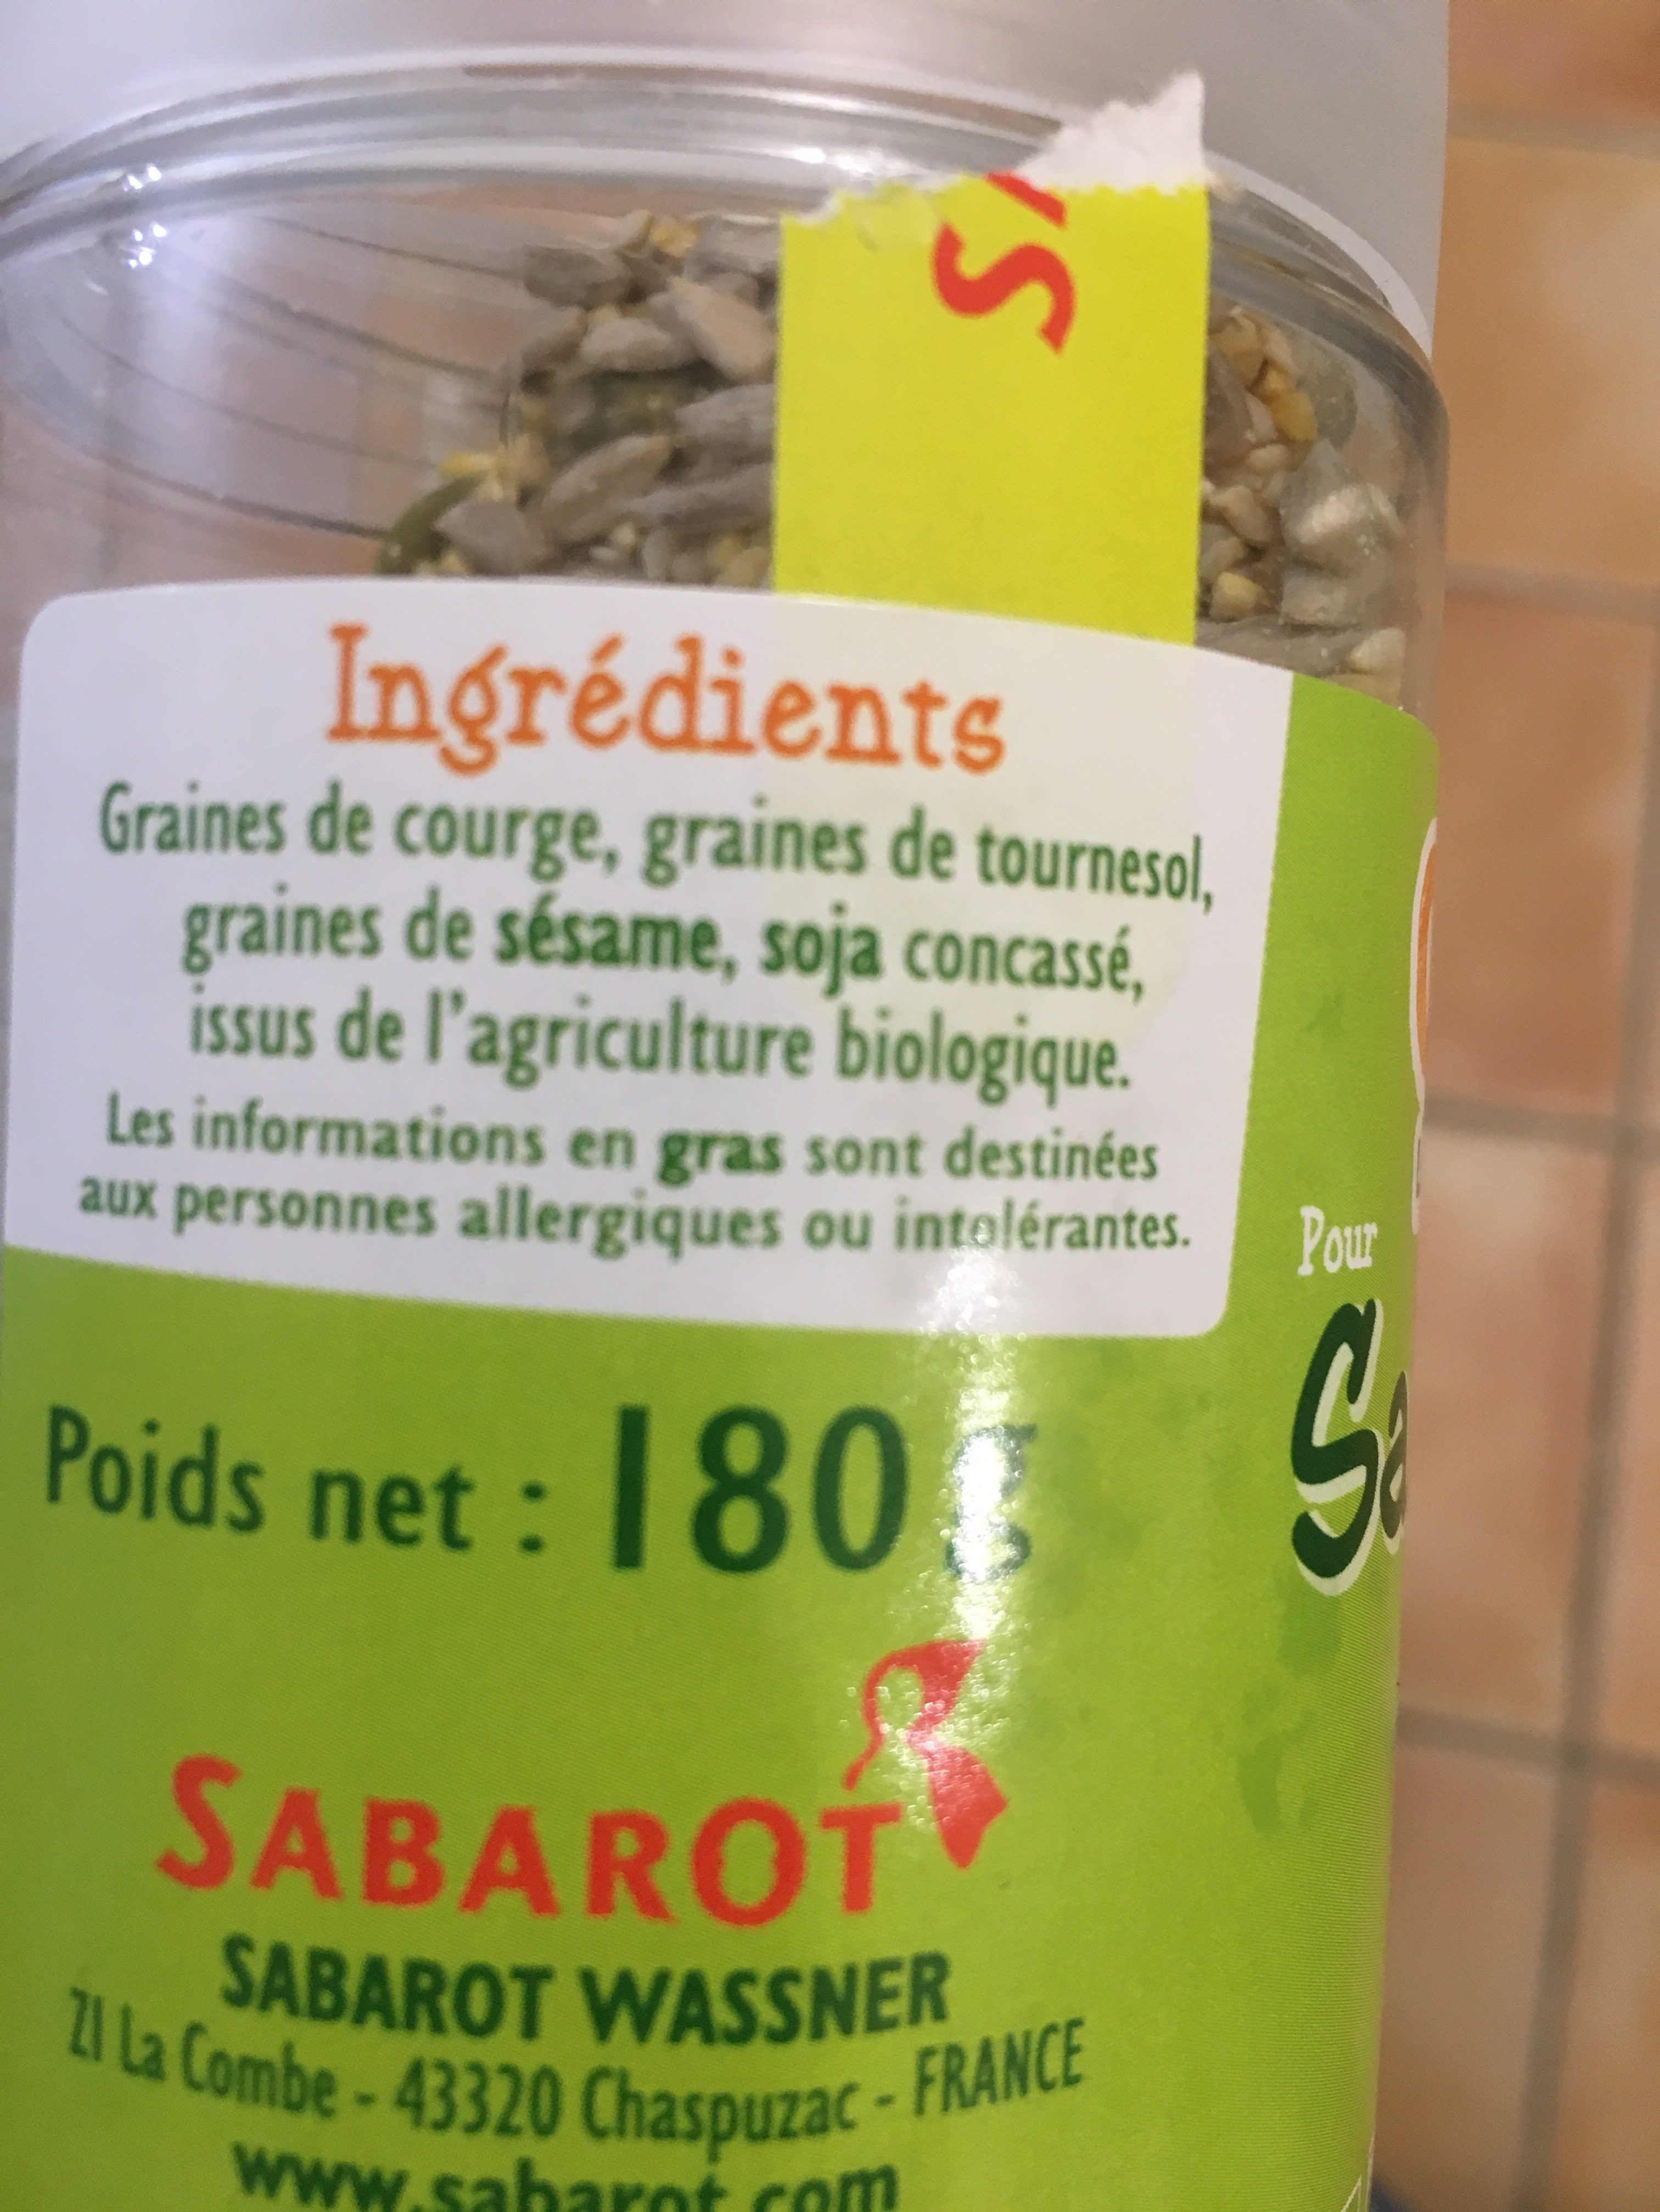 Graines pour salades - Ingredienser - fr